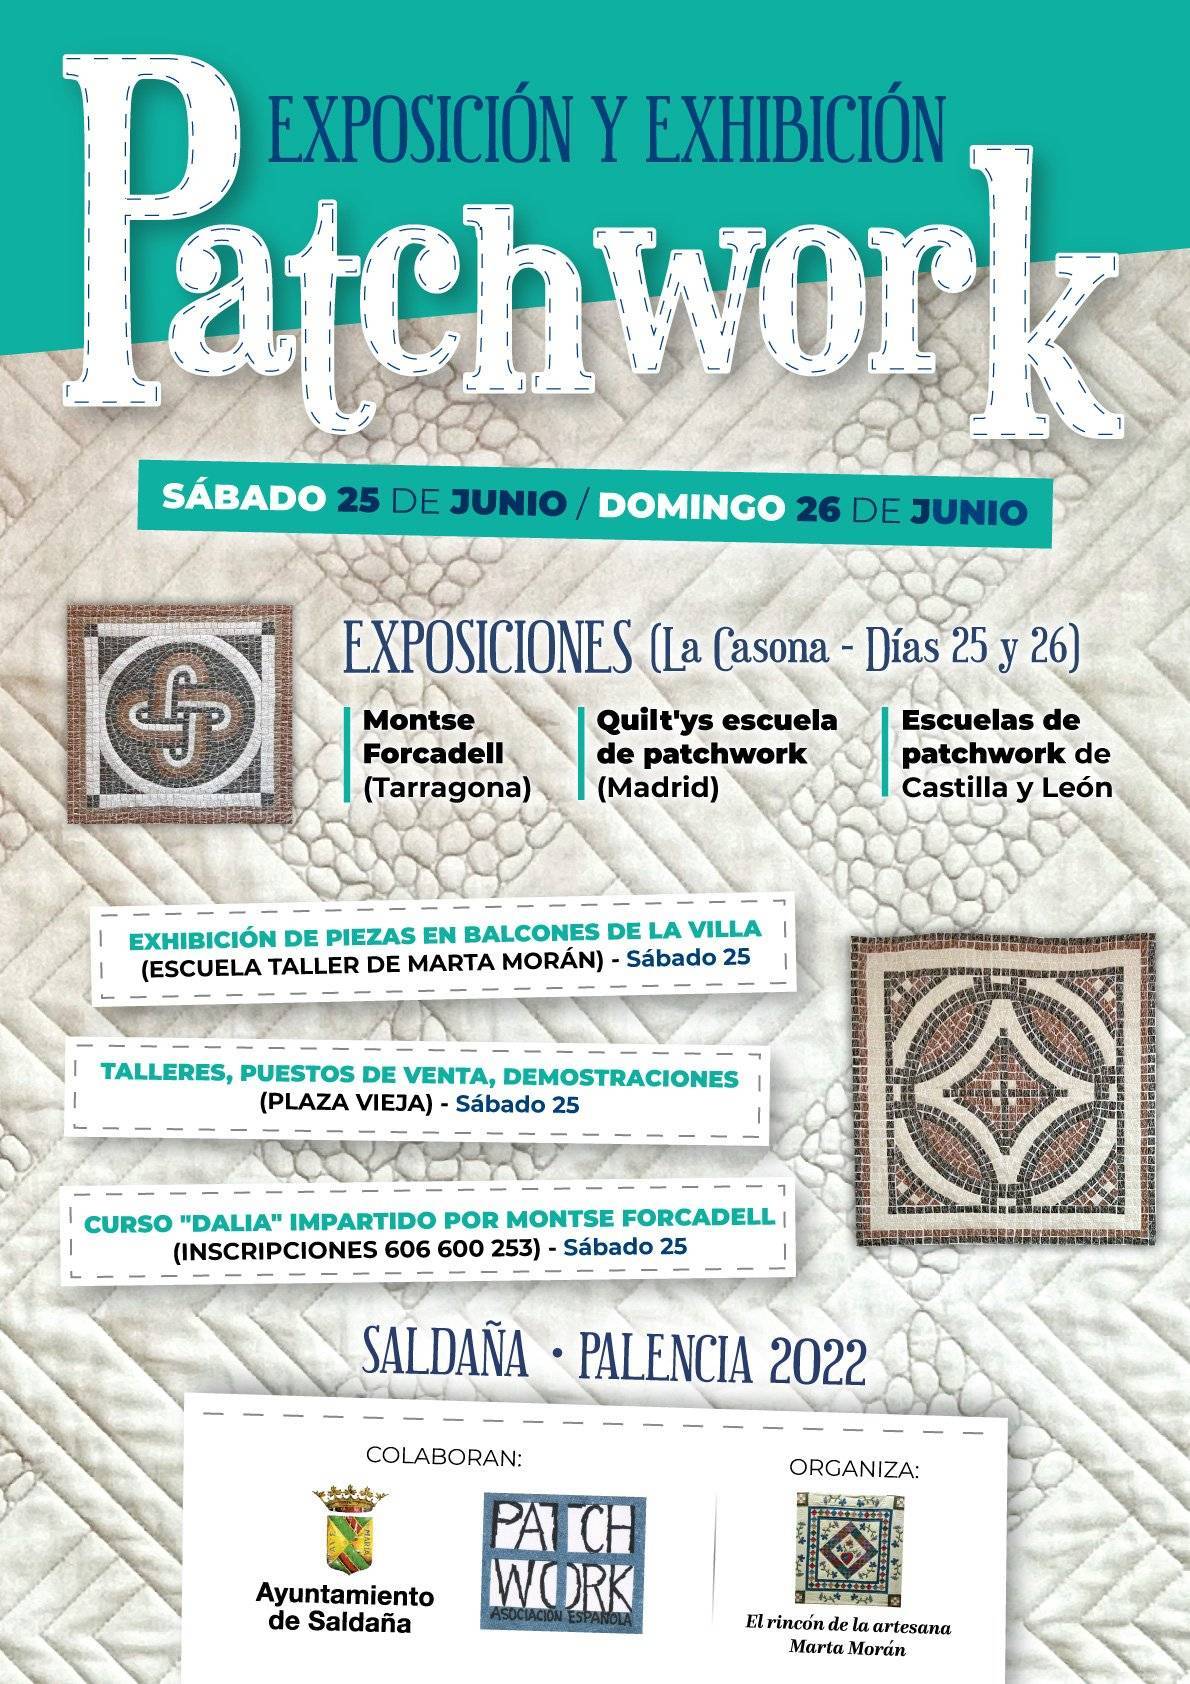 Exposición y exhibición de patchwork (2022) - Saldaña (Palencia)